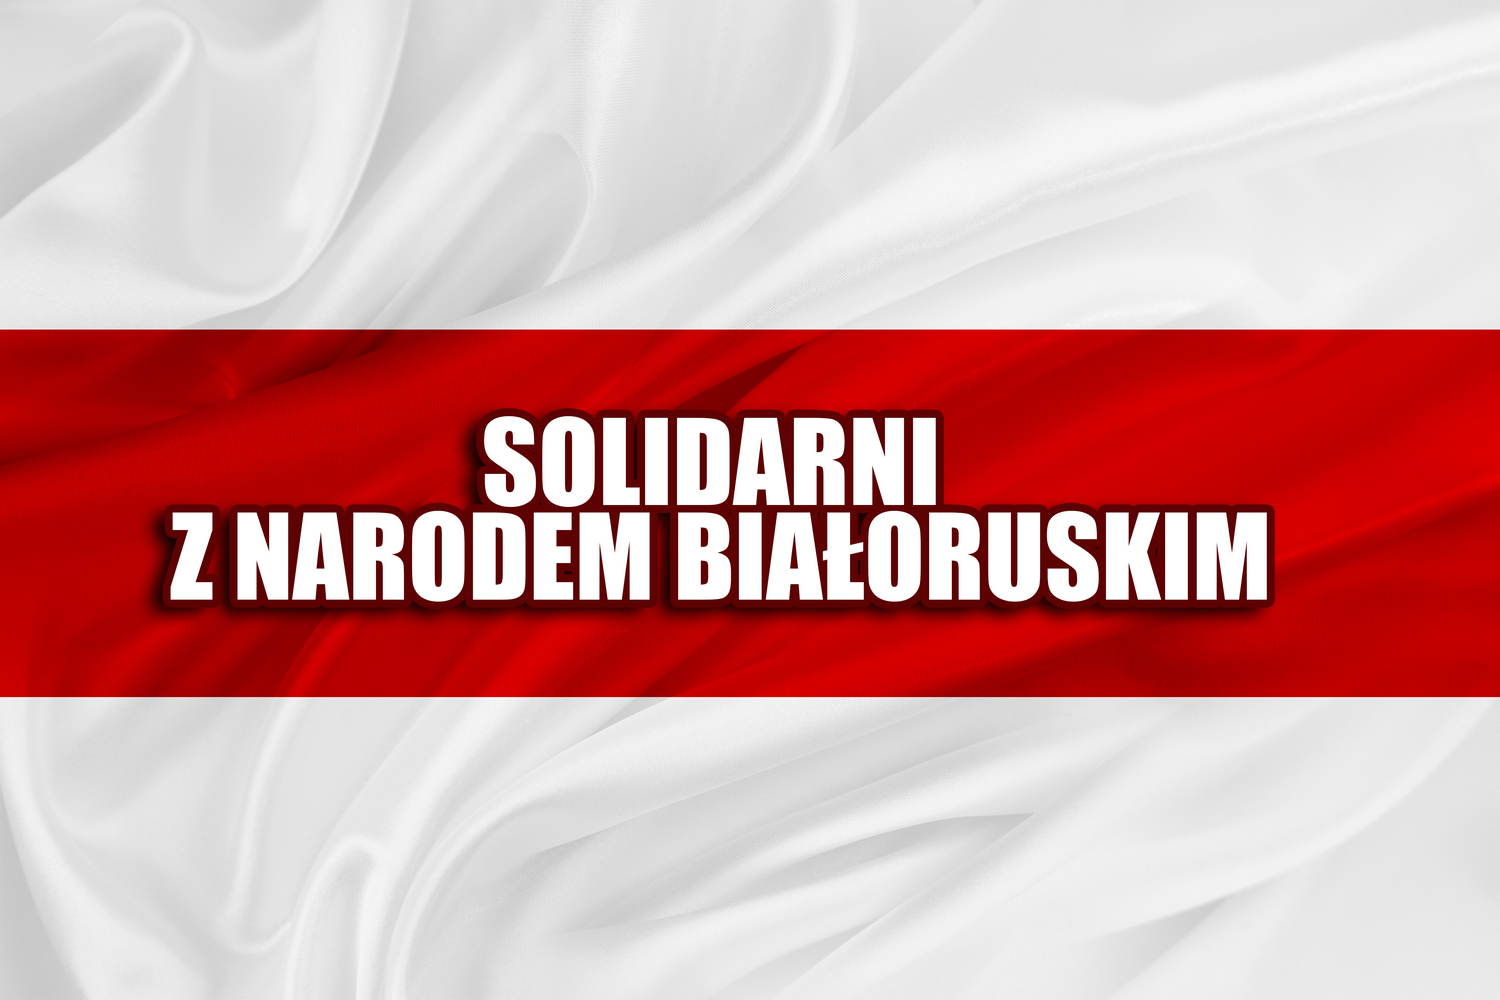 Солидарность с народом Беларуси, который ценит независимость и демократию